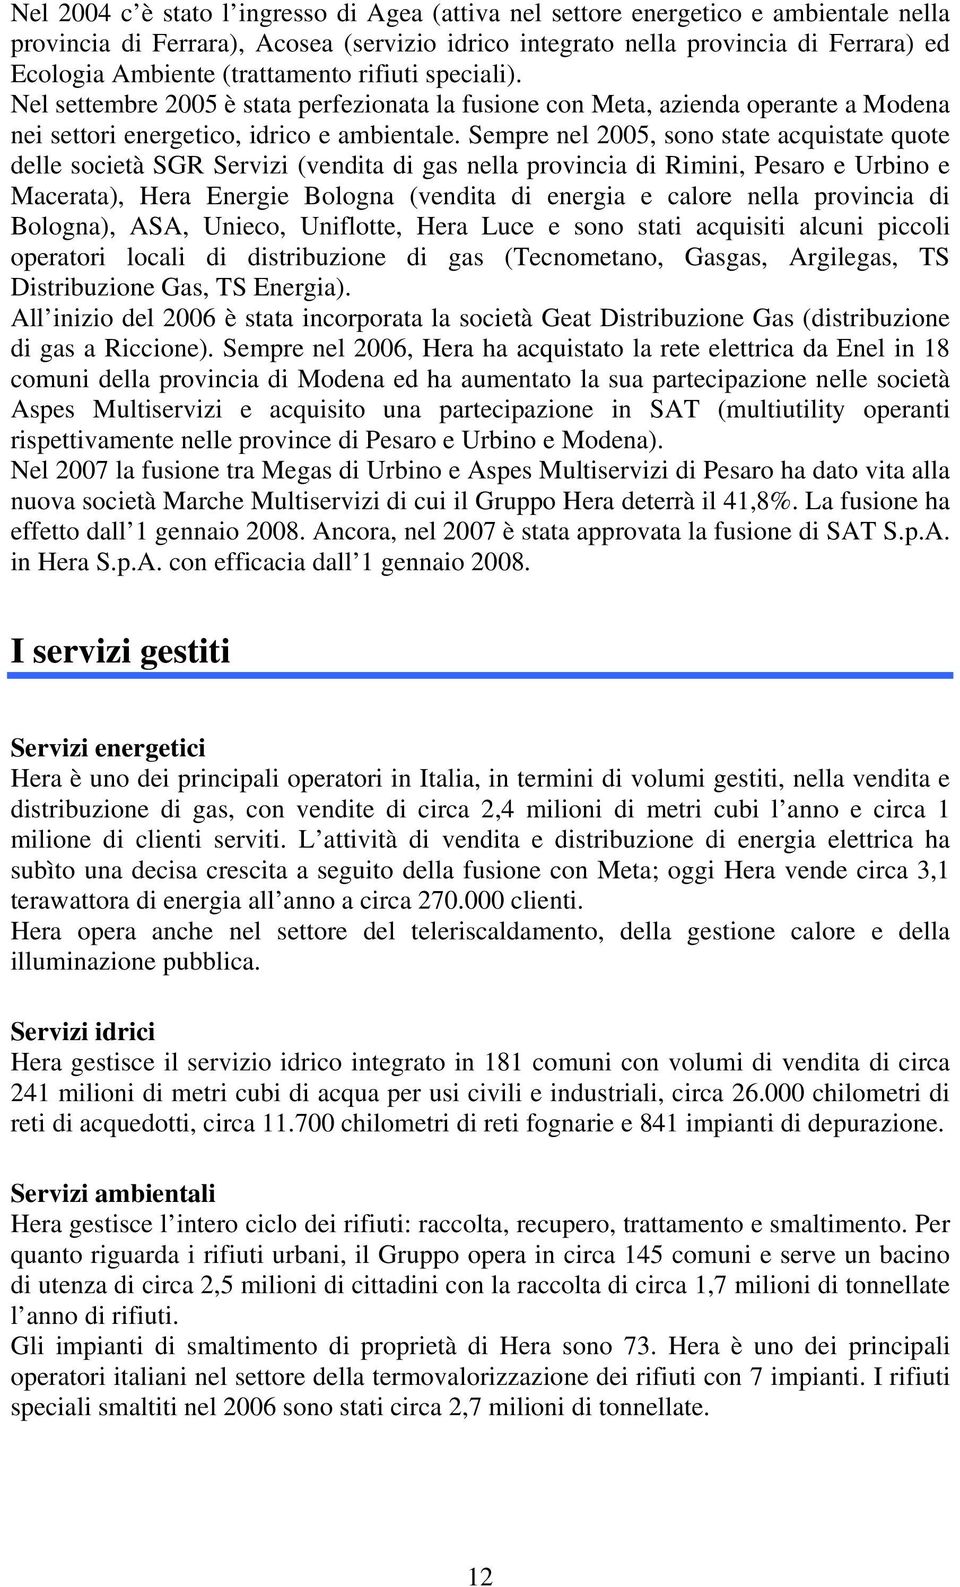 Sempre nel 2005, sono state acquistate quote delle società SGR Servizi (vendita di gas nella provincia di Rimini, Pesaro e Urbino e Macerata), Hera Energie Bologna (vendita di energia e calore nella